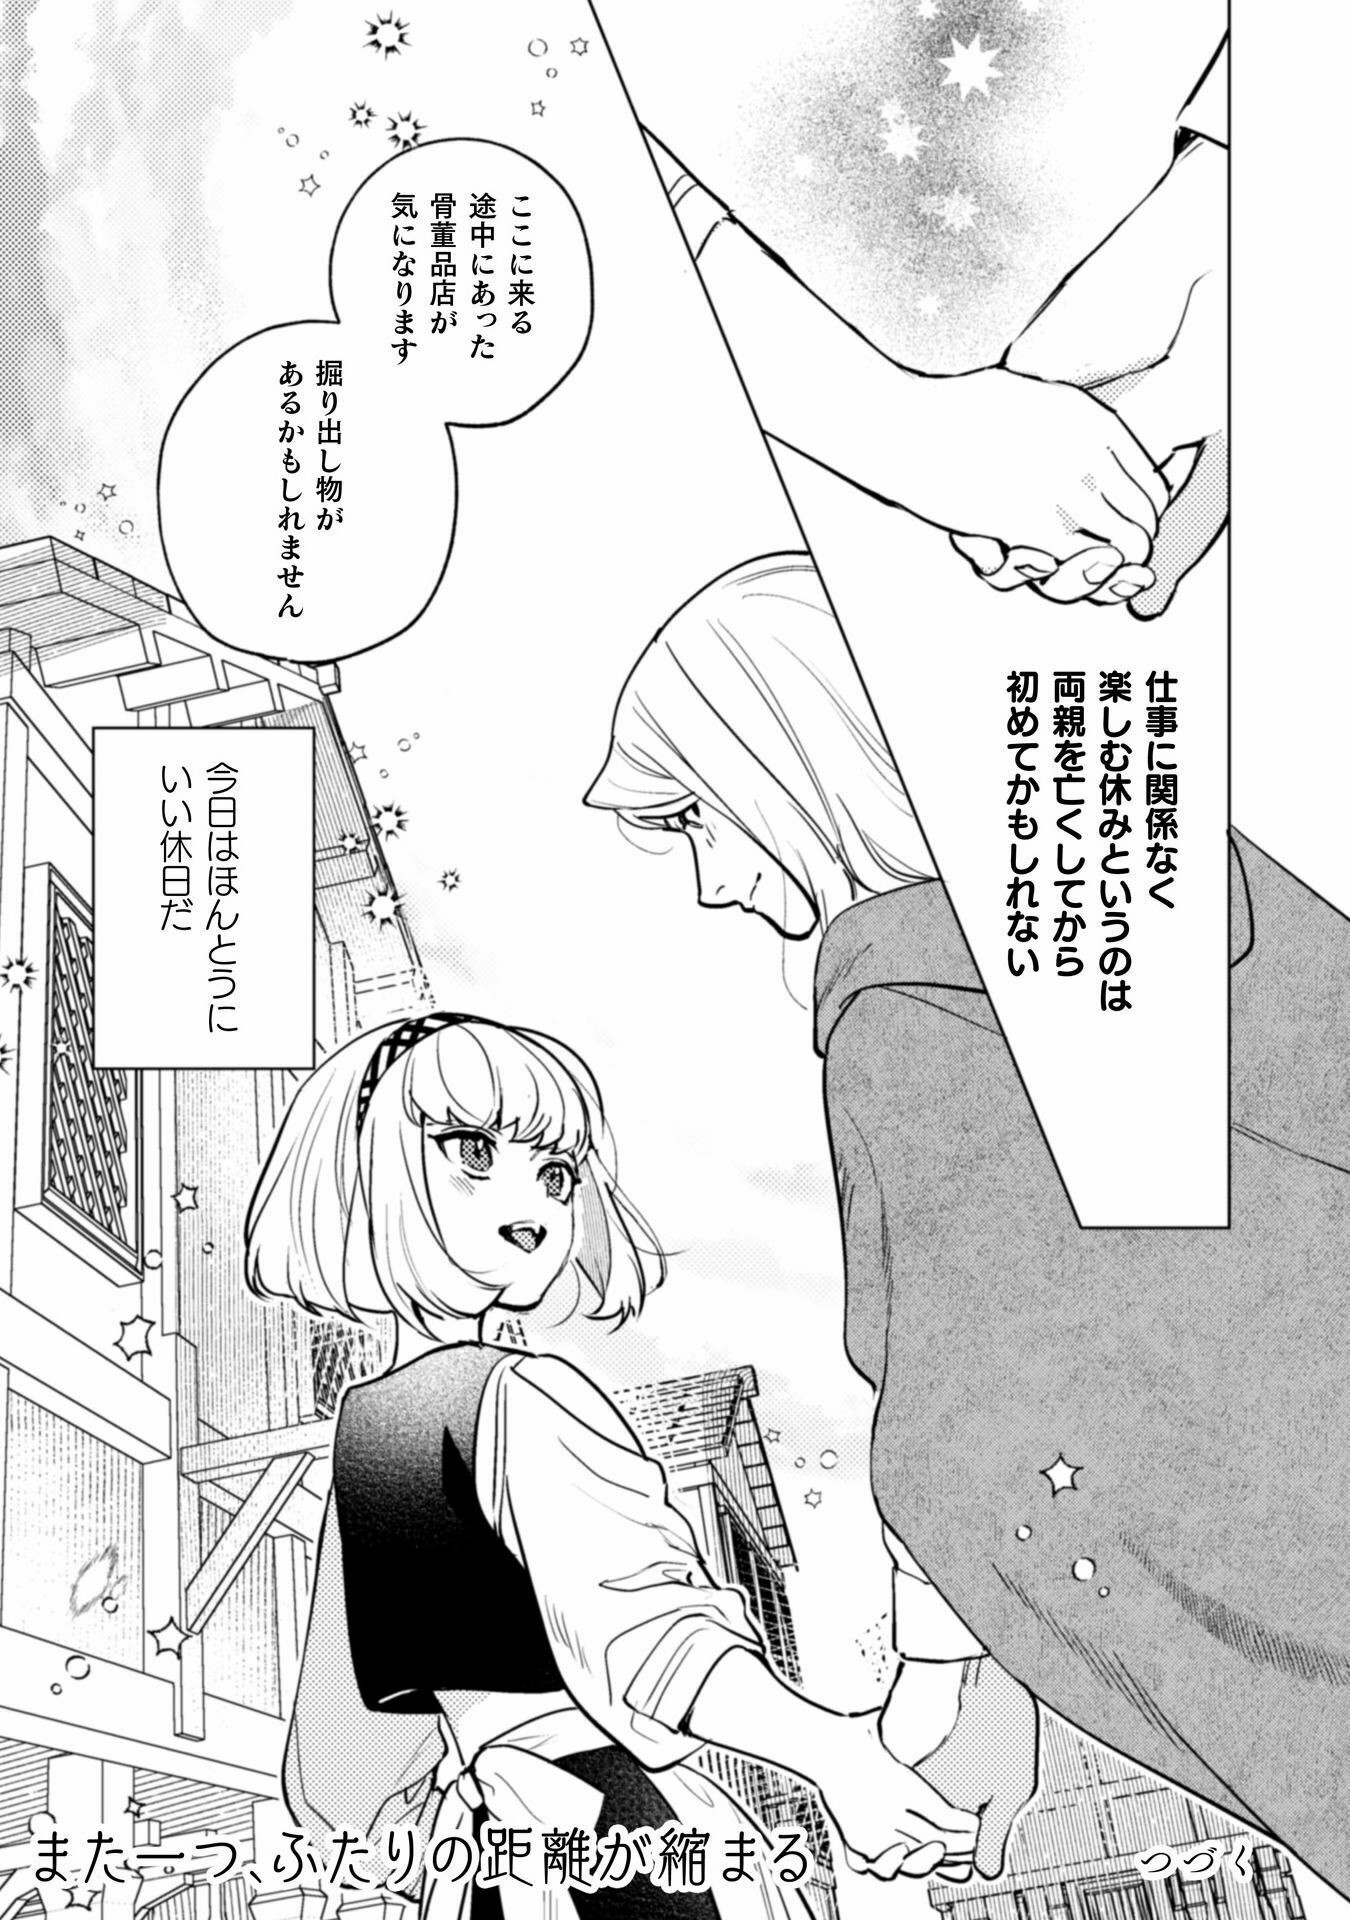 Uranaishi ni wa Hana Kishi no Koigokoro ga Mieteimasu - Chapter 23 - Page 23